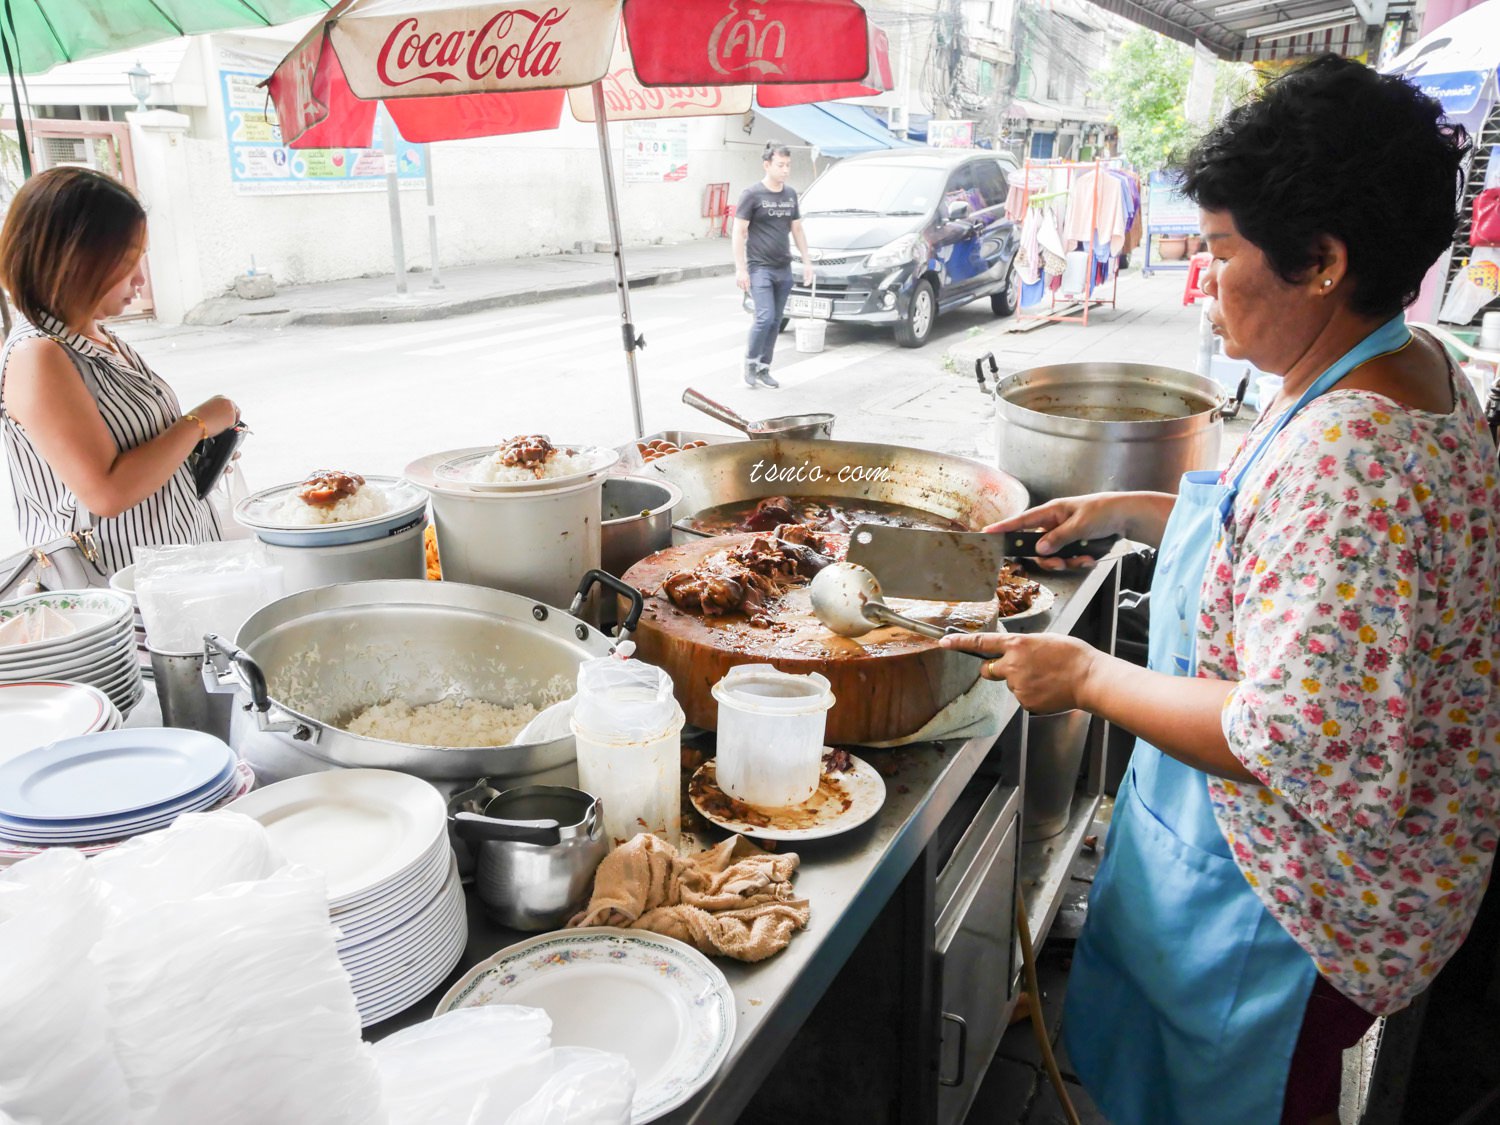 曼谷美食推薦 TROK SUNG 豬腳飯 道地平價泰國小吃